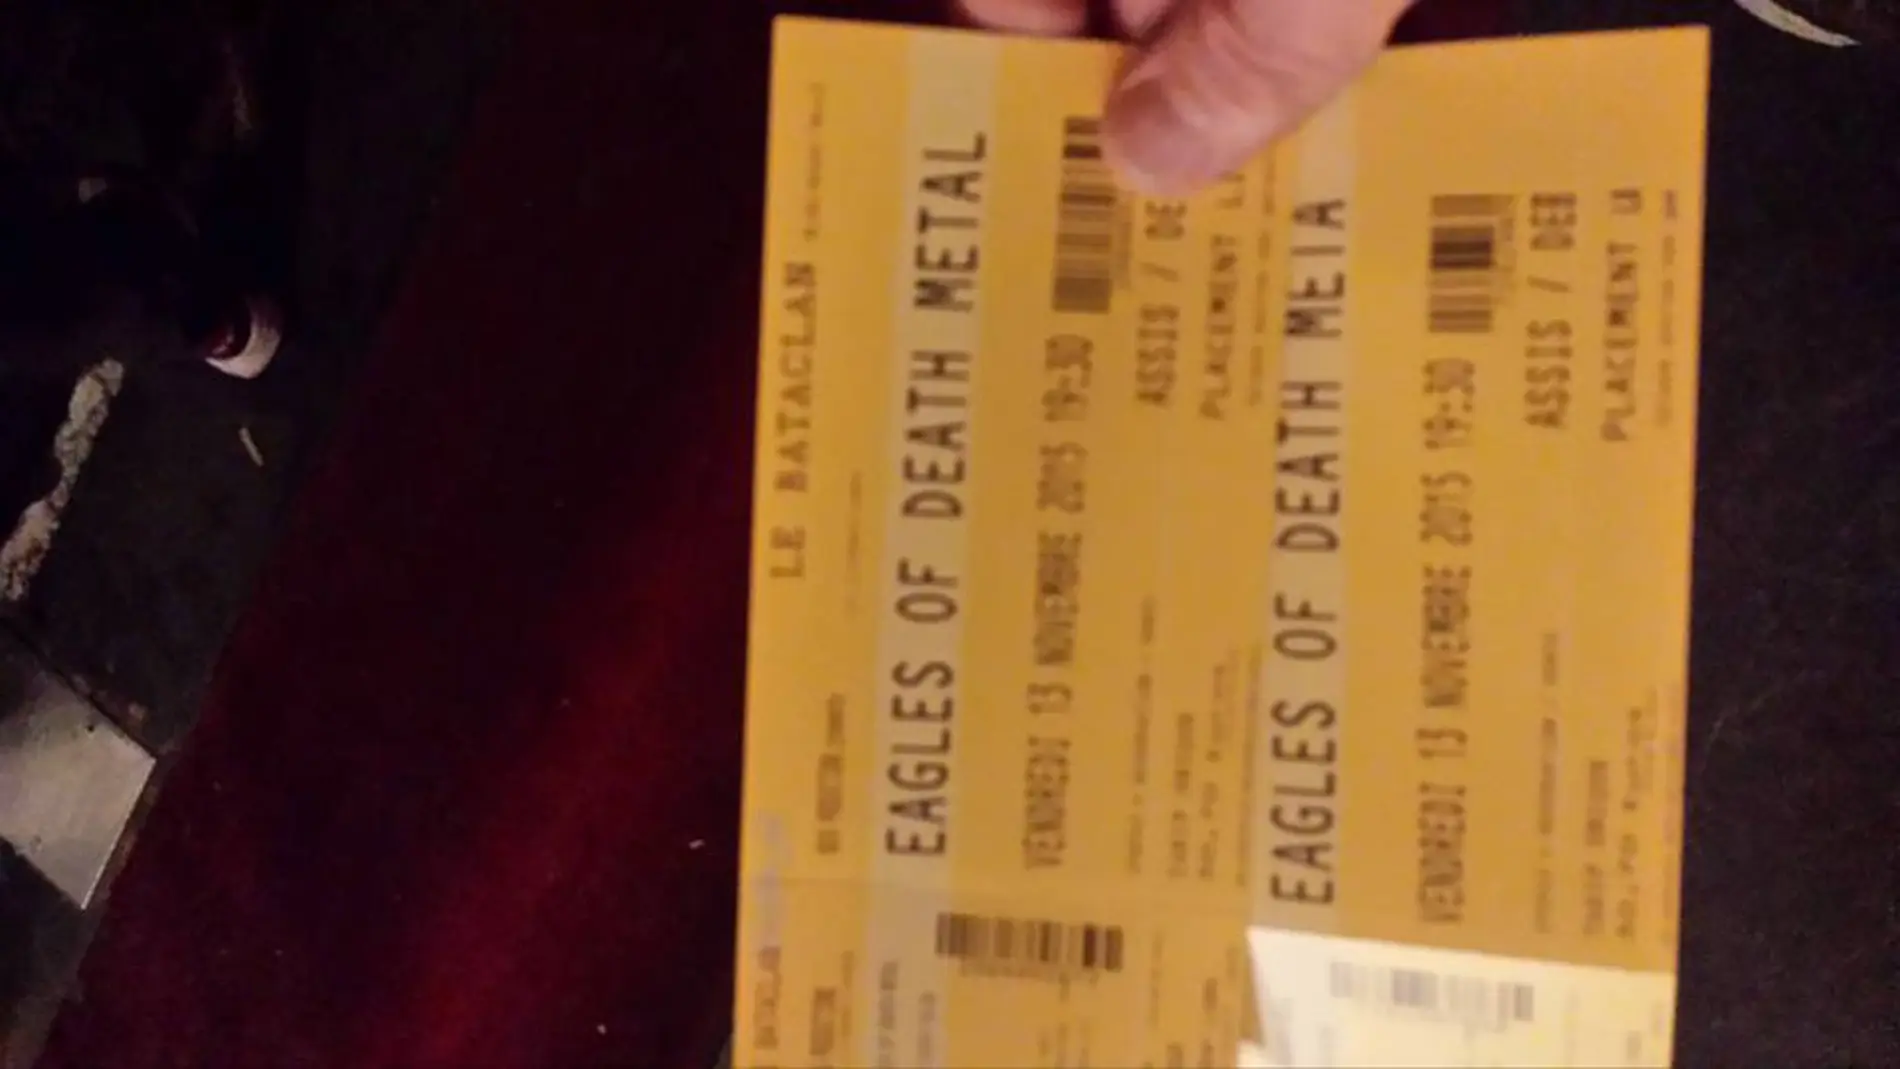 Imagen de las entradas con las que Manu Pérez accedió al concierto de Eagles of Death Metal